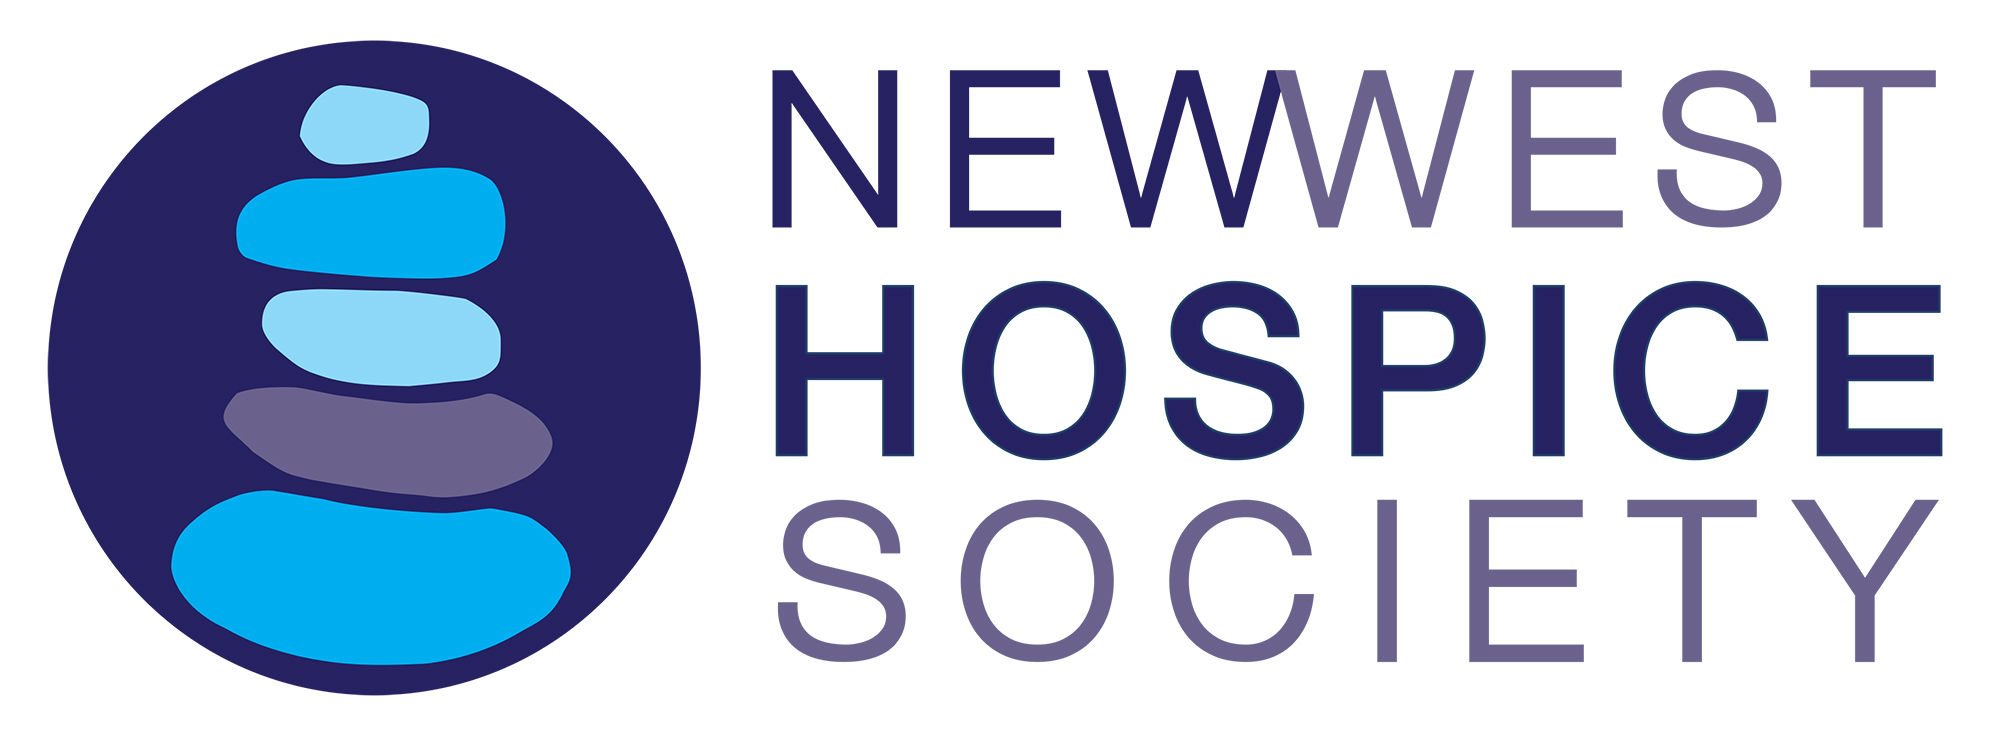 New West Hospice Society logo